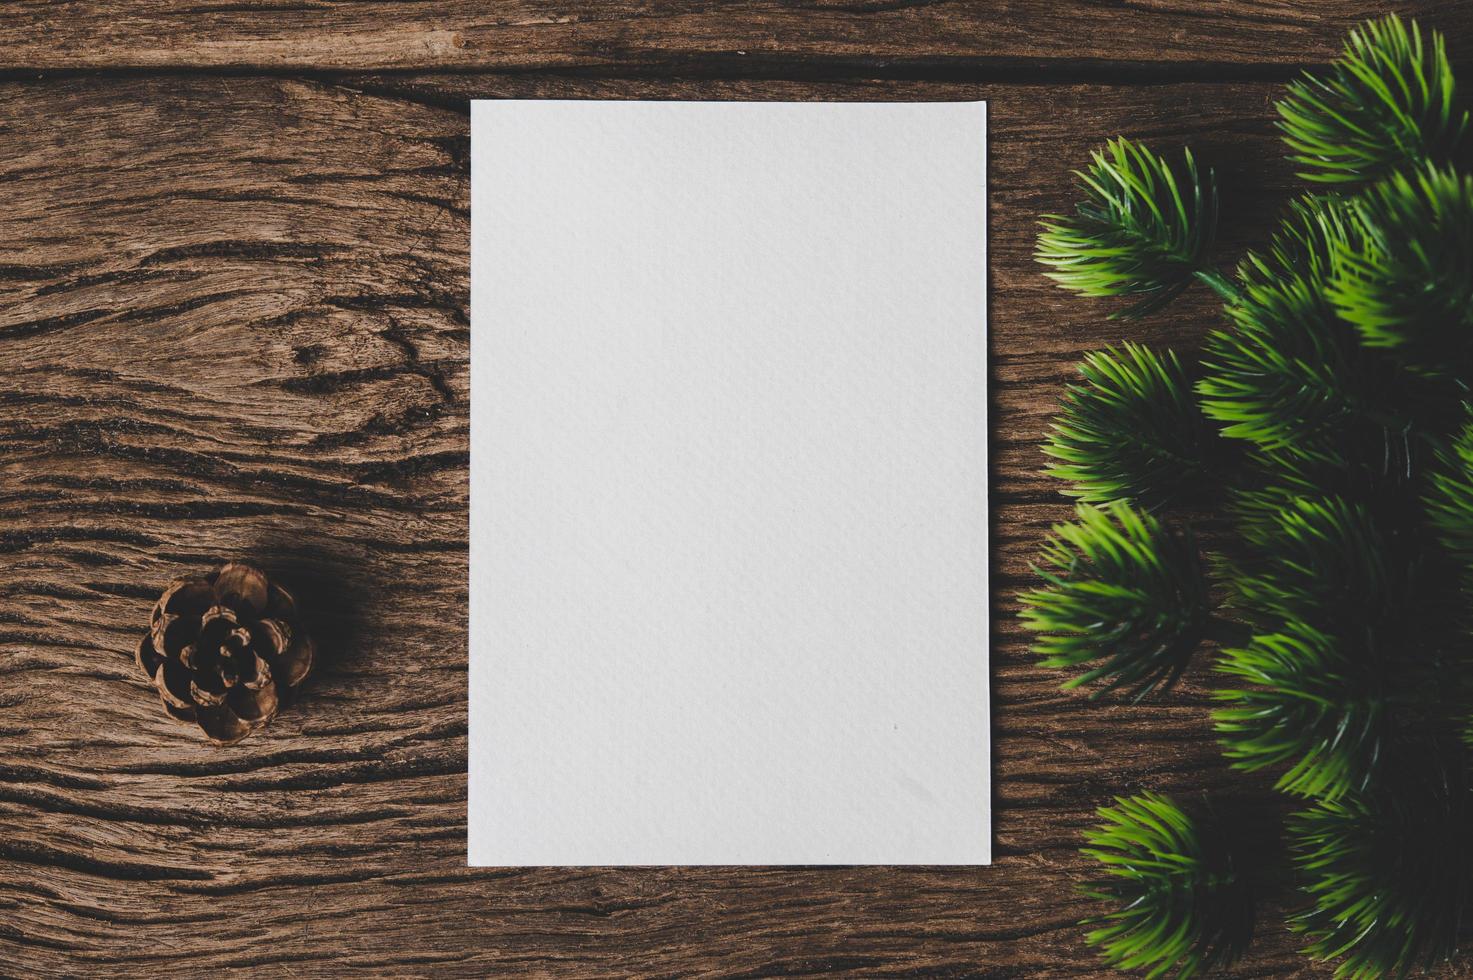 um cartão em branco é colocado em um envelope e uma folha com fundo de madeira foto